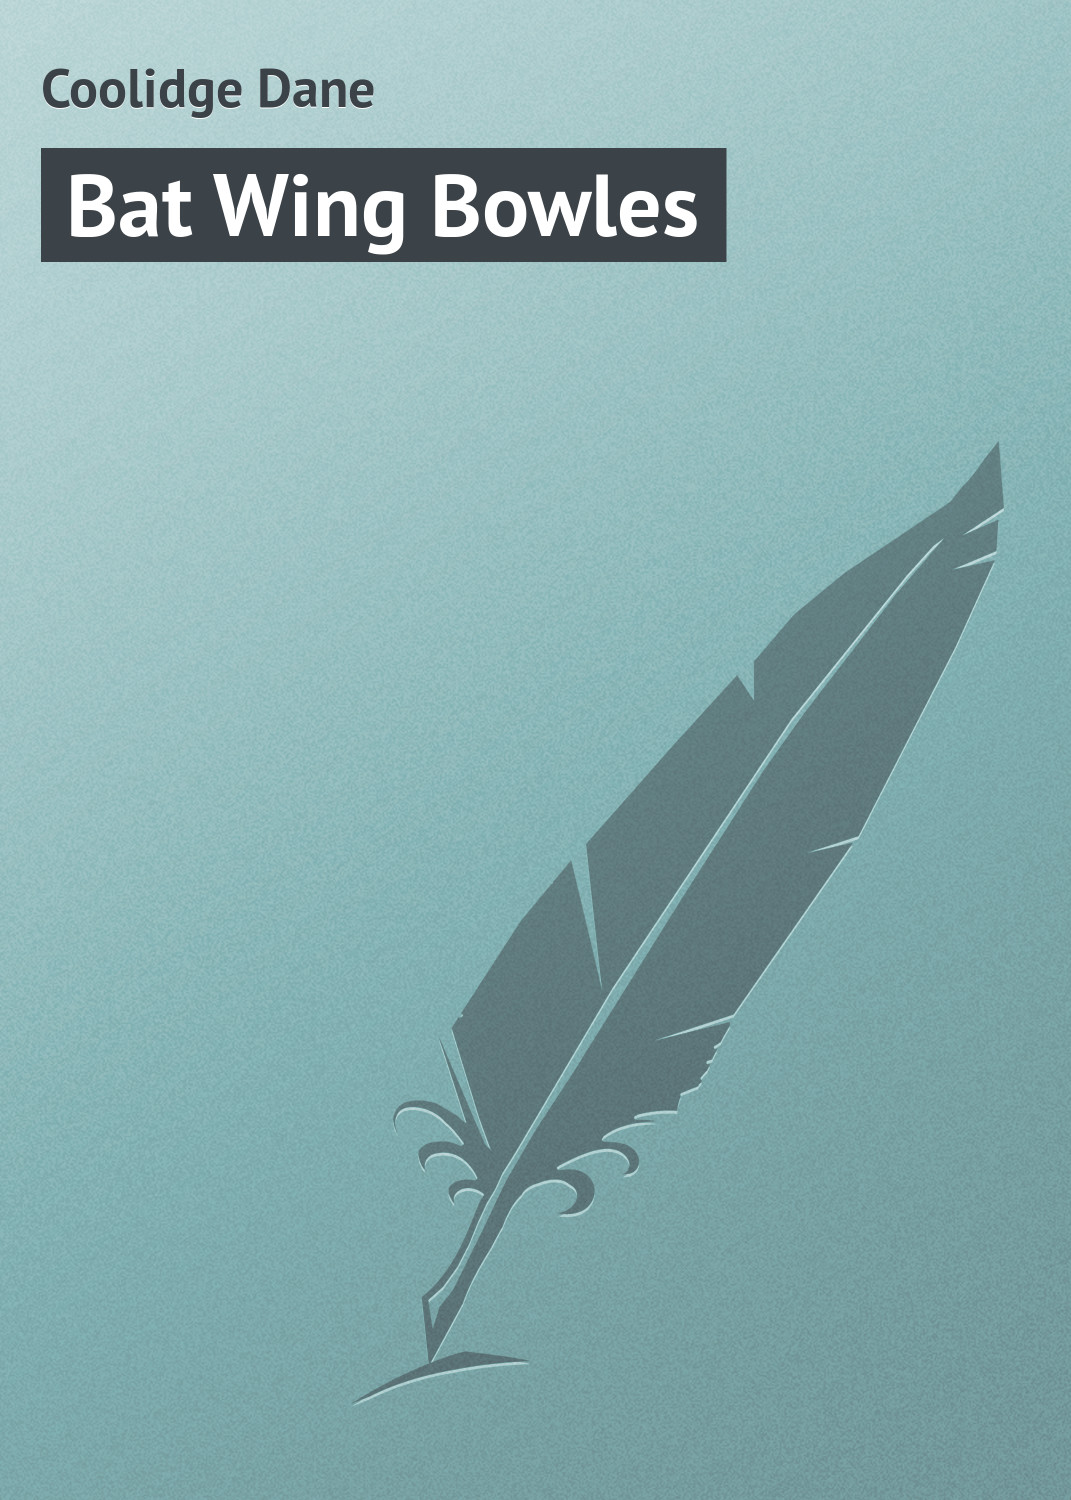 Книга Bat Wing Bowles из серии , созданная Dane Coolidge, может относится к жанру Зарубежная классика, Зарубежные приключения. Стоимость электронной книги Bat Wing Bowles с идентификатором 23157483 составляет 5.99 руб.